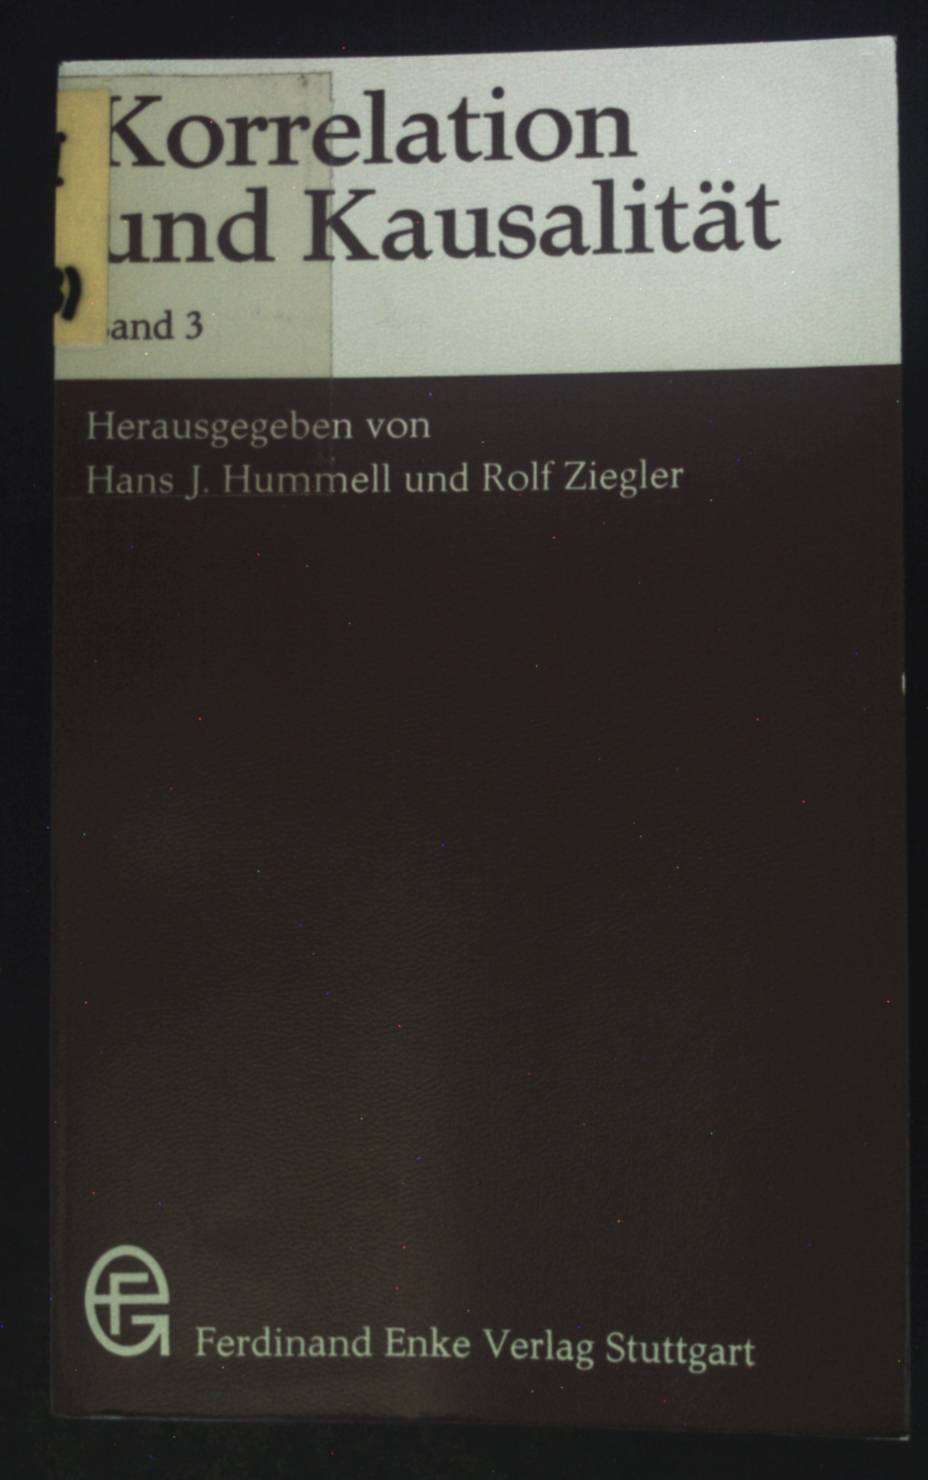 Korrelation und Kausalität; Bd. 3. - Hummell, Hans J. und Rolf Ziegler